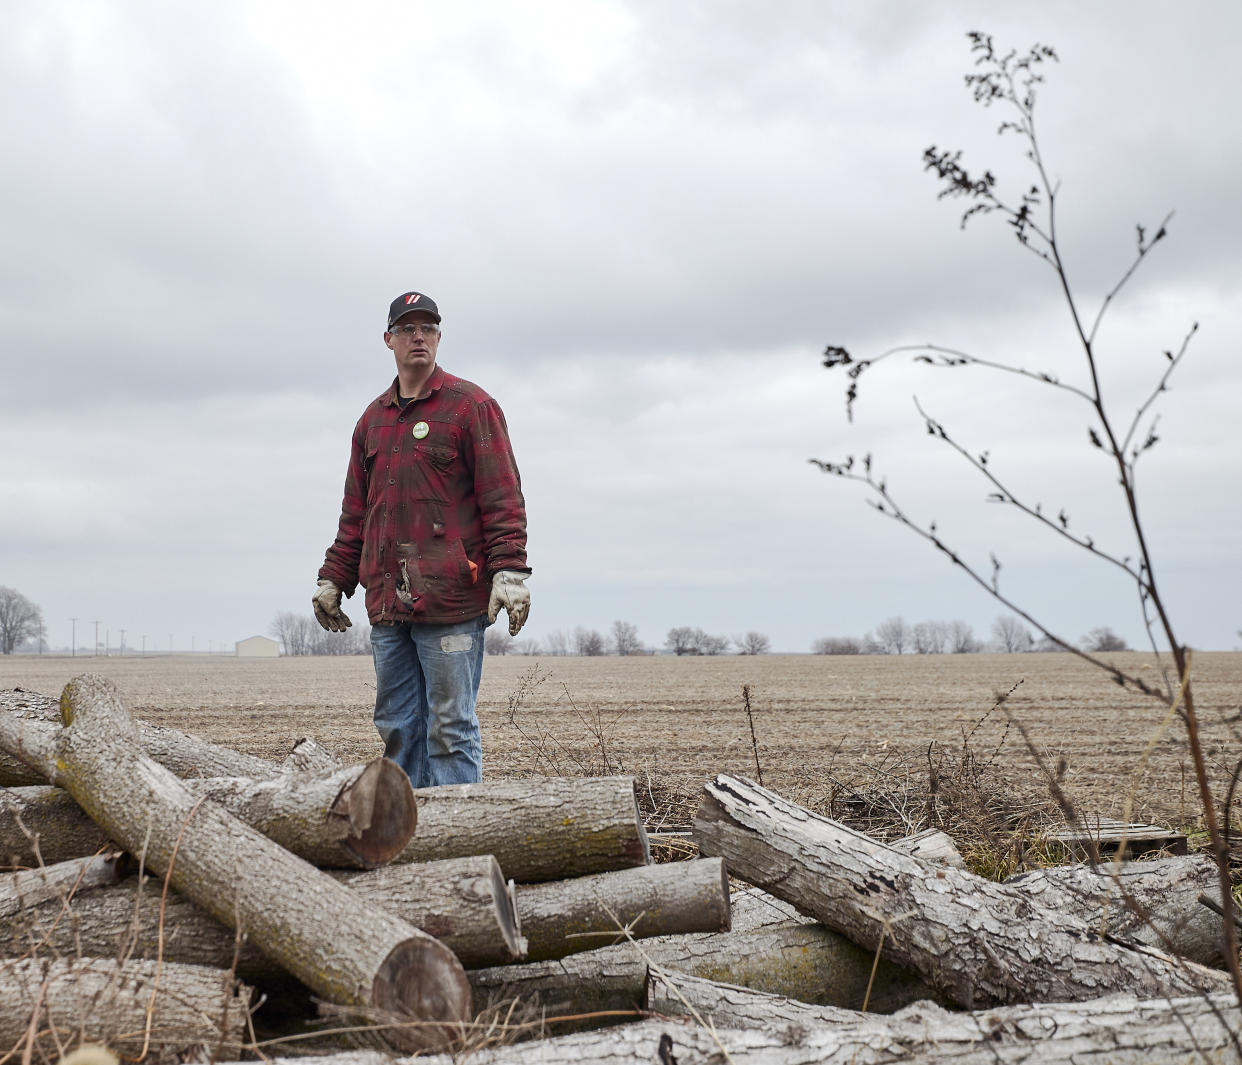 Brendan Burton de Ospur, Illinois, un trabajador metalúrgico y agricultor, recibe con beneplácito la idea de la granja eólica y los empleos que traería al área. (Mustafa Hussain/The New York Times)
